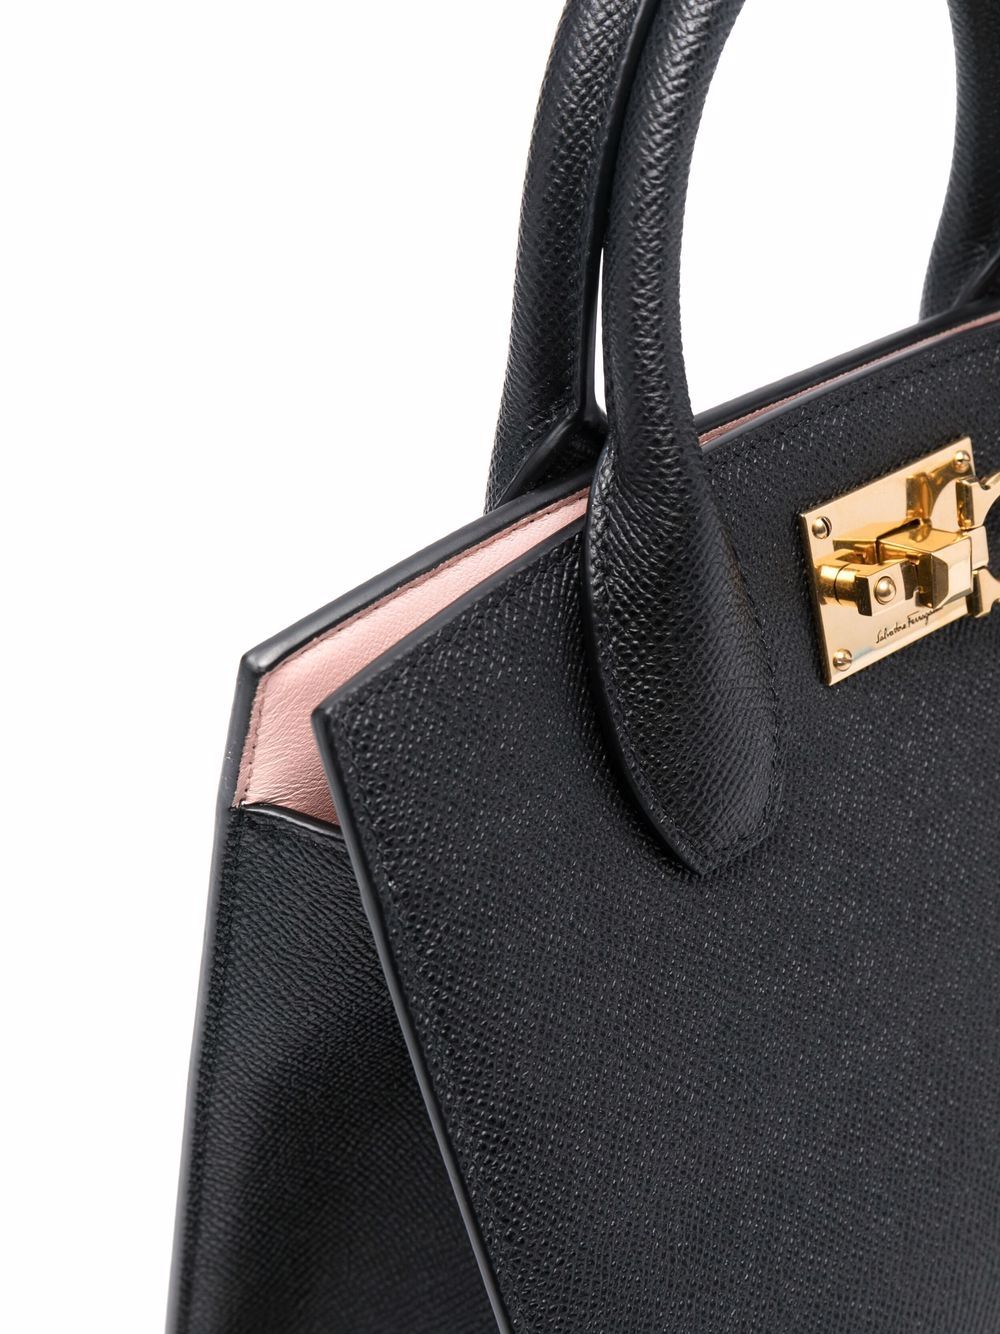 高級感溢れるサルバトーレ・フェラガモSS24コレクションの黒革トートハンドバッグ